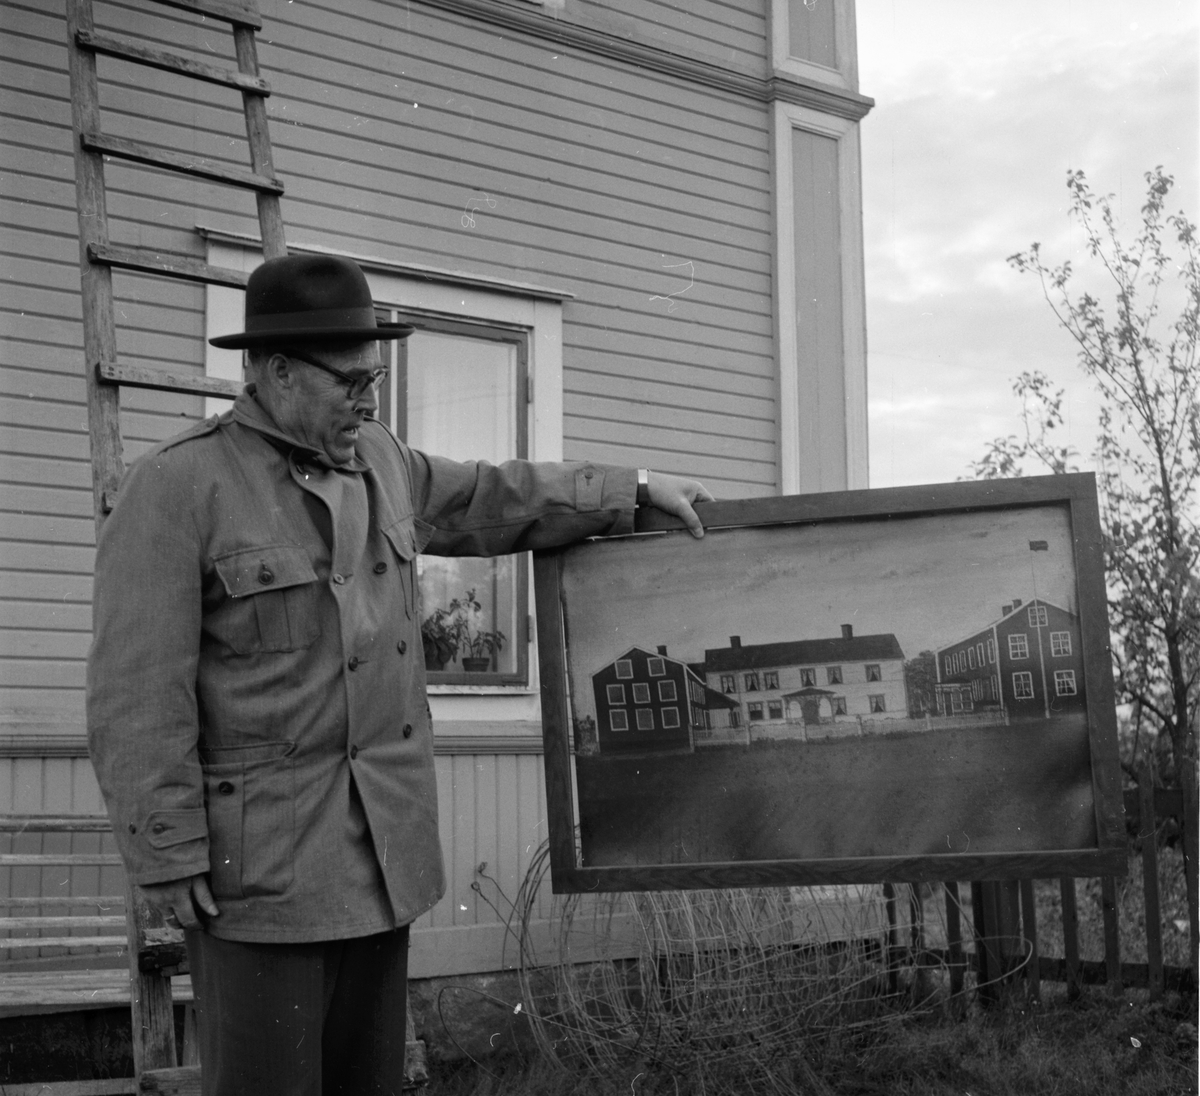 Husflyttning, Norrbo.
Oktober 1960